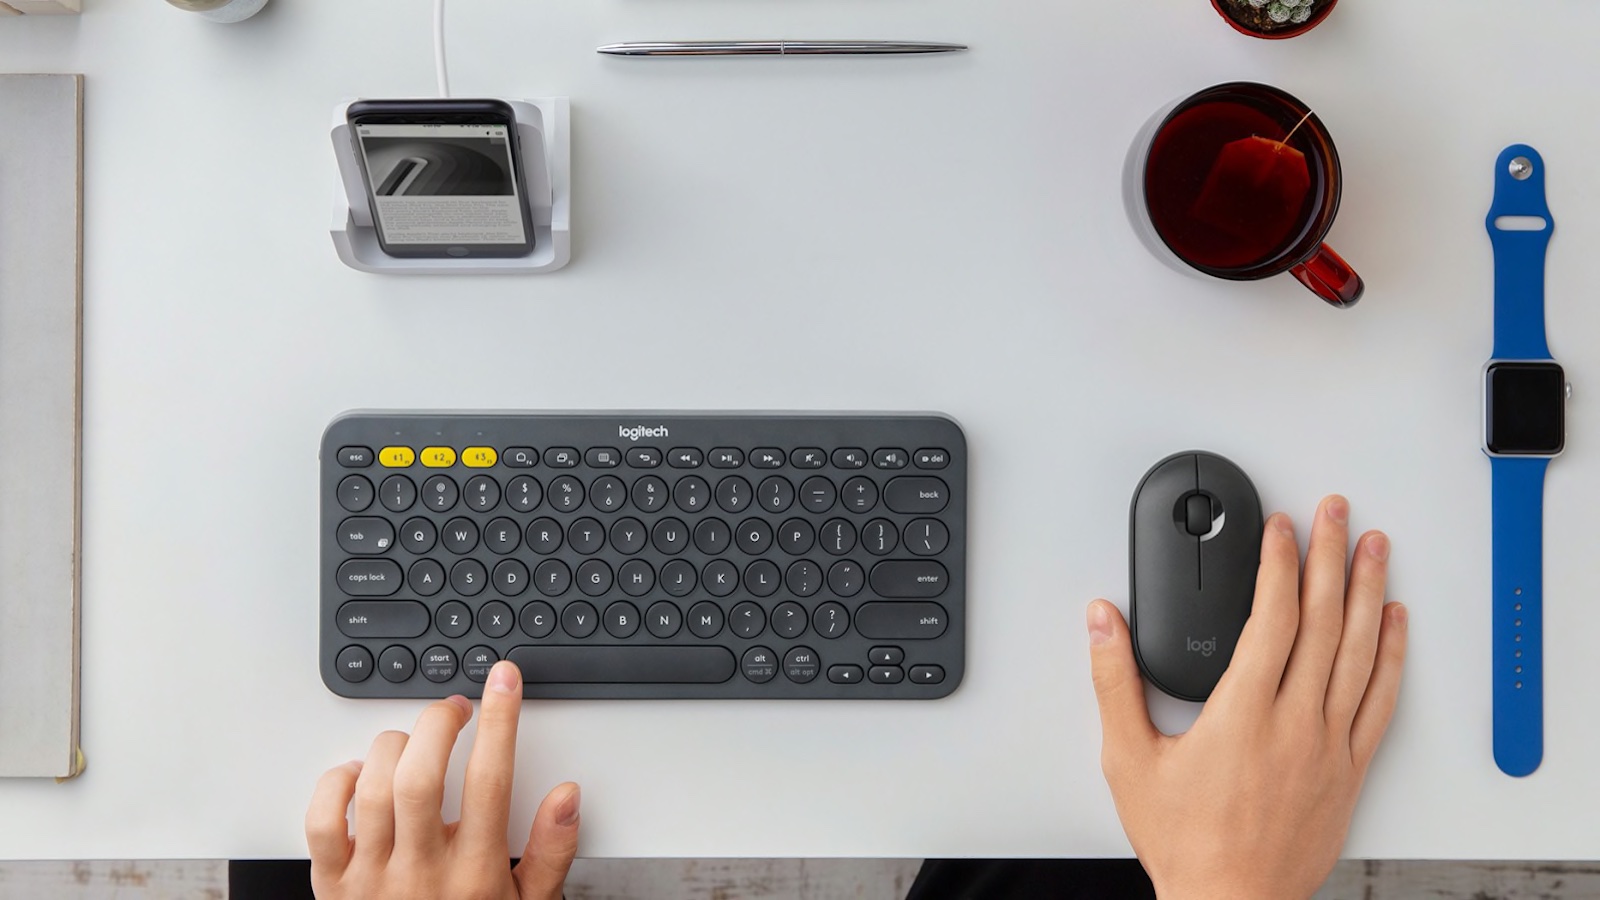 Top 10 Best Wireless Keyboards in Singapore